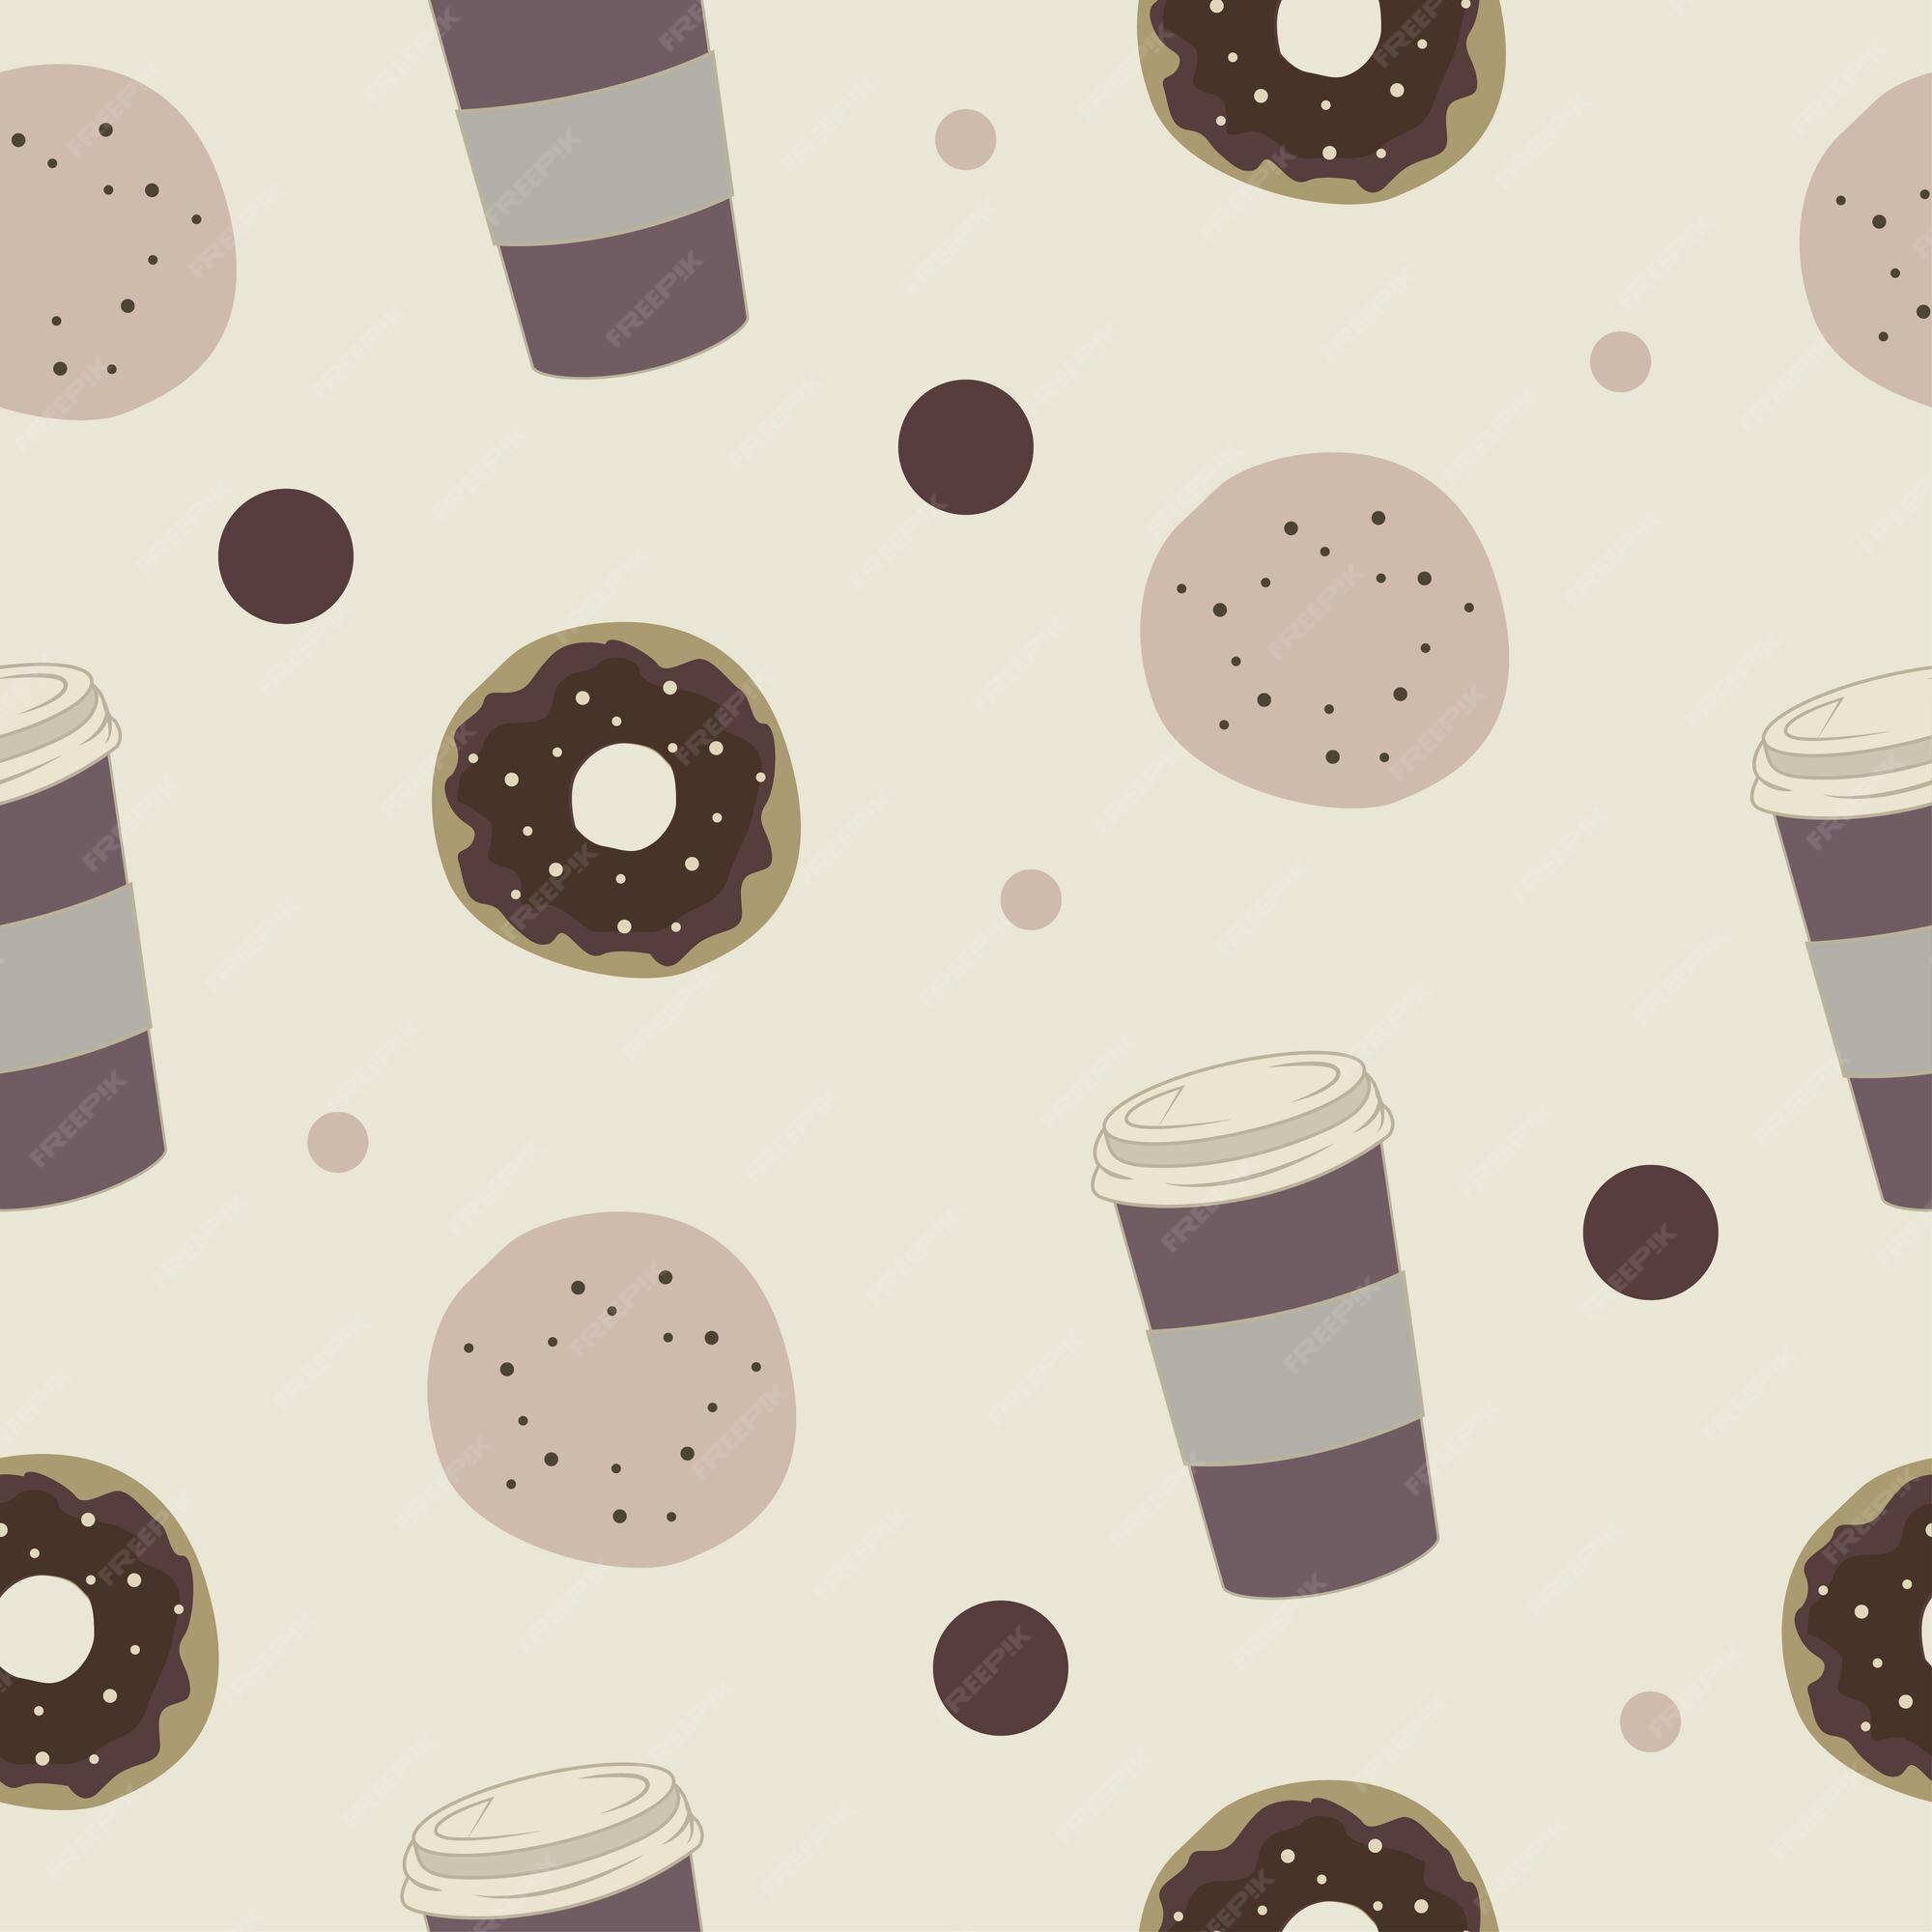 Mẫu hoa văn vòng cung donut và cà phê là sự lựa chọn tuyệt vời để thể hiện sự đa dạng và tinh tế của bạn. Với màu sắc sáng tạo và hình ảnh độc đáo, bạn sẽ chắc chắn gây ấn tượng với những người xung quanh.